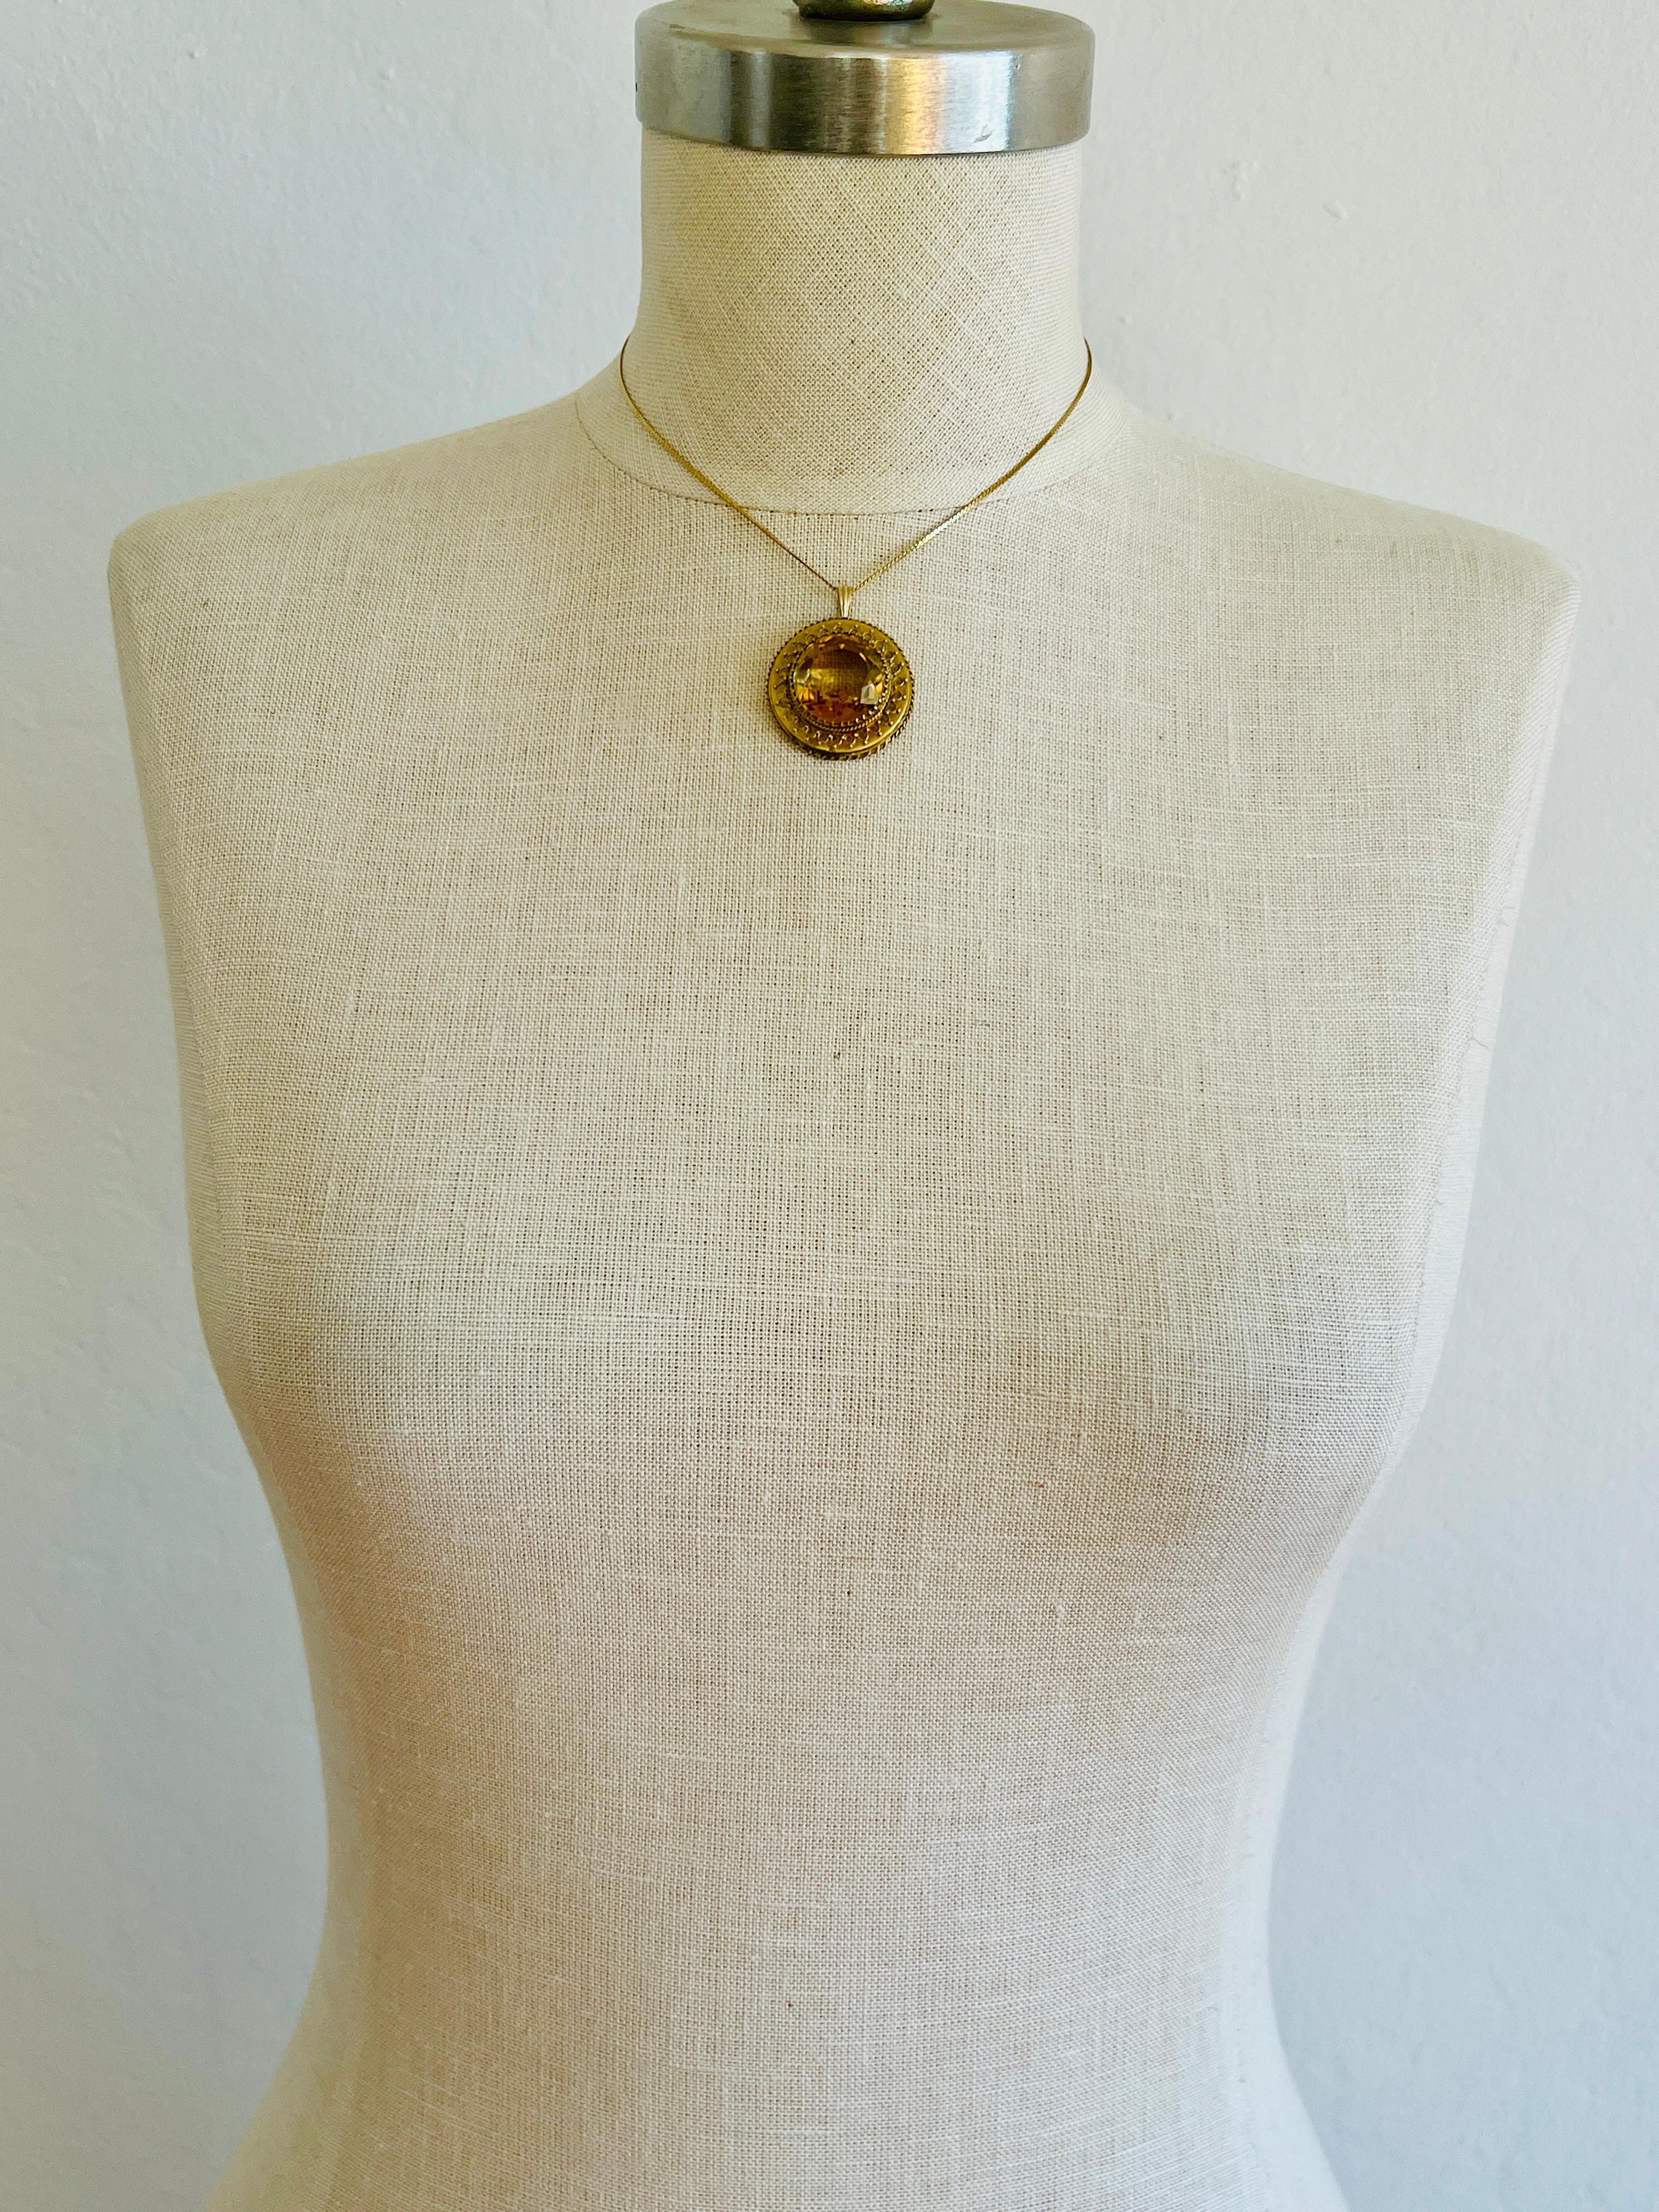 Large Antique 14k Yellow Gold Citrine Quartz Necklace Pendant Vintage Round 6